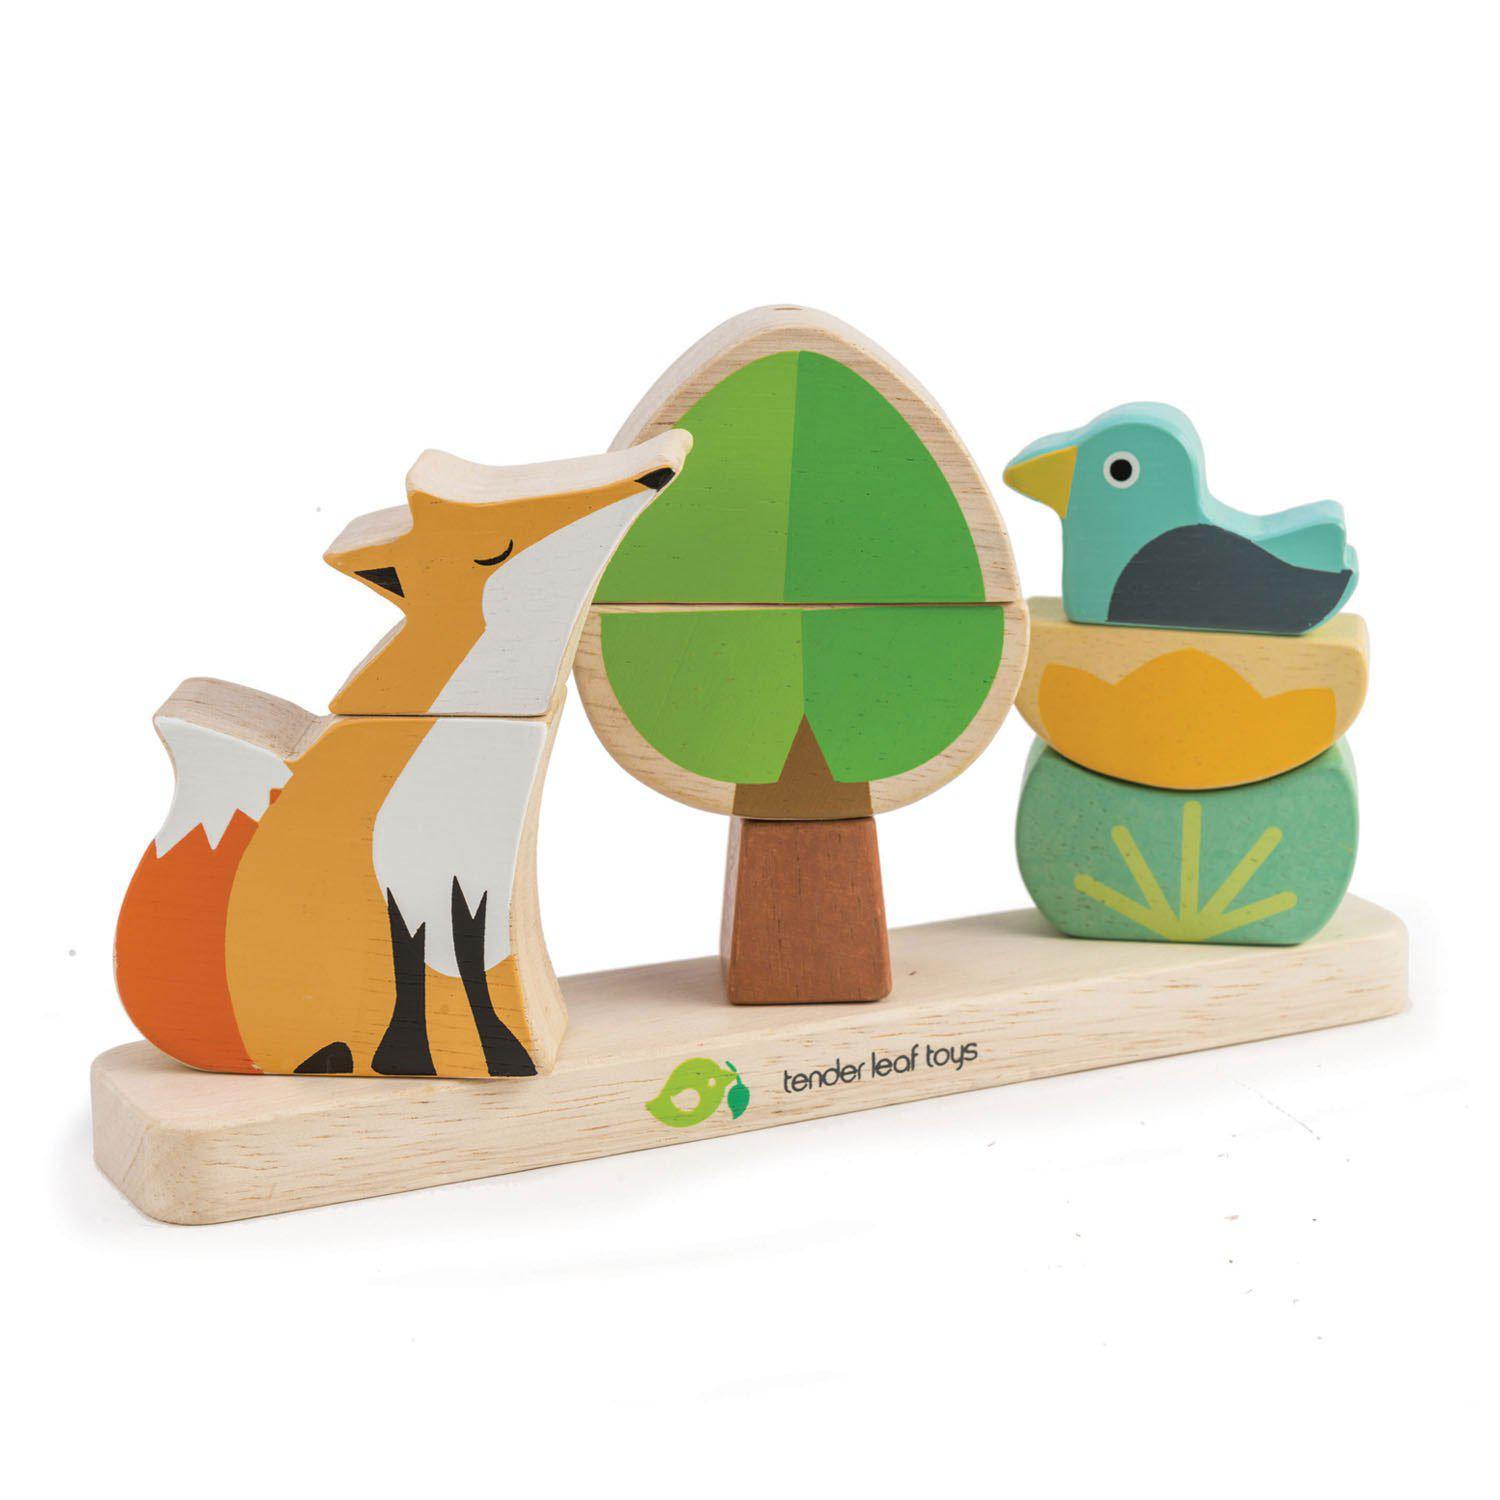 Erdei róka mágneses oktató puzzle, prémium minőségű fából - Foxy Magnetic Stacker - 8 darab - Tender Leaf Toys-Tender Leaf Toys-2-Játszma.ro - A maradandó élmények boltja